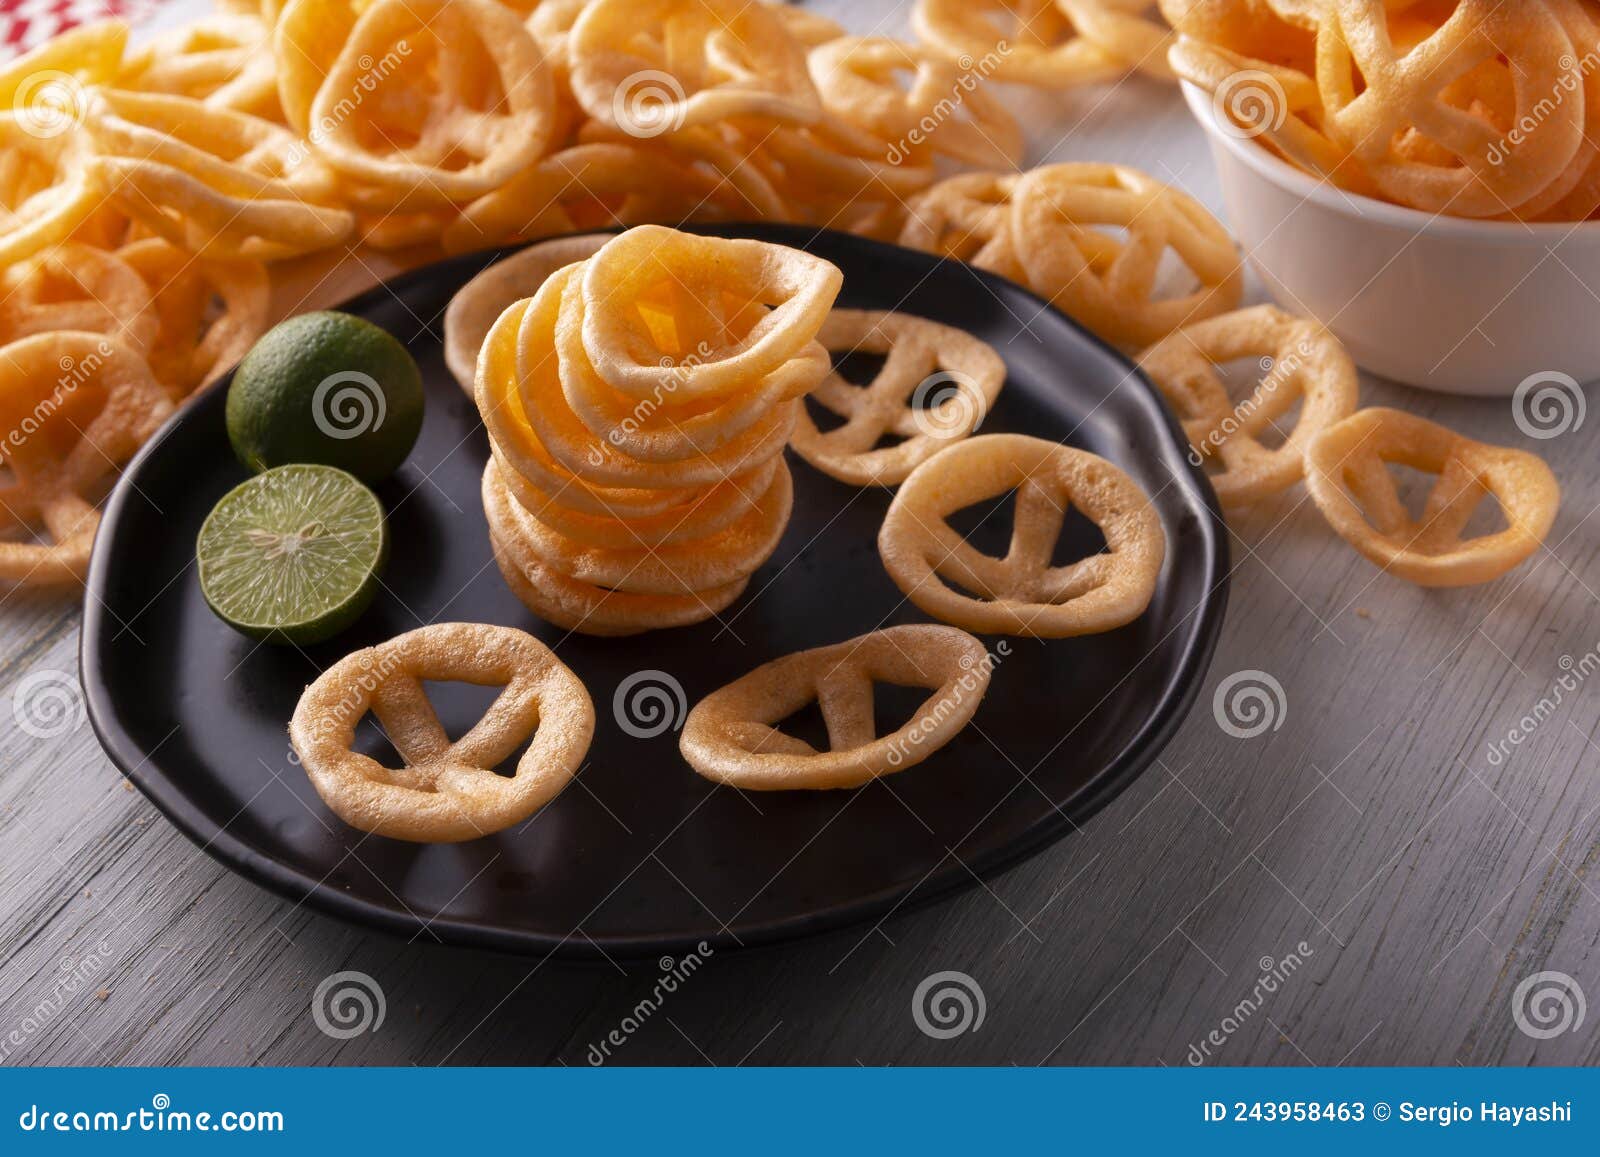 pinwheels snacks